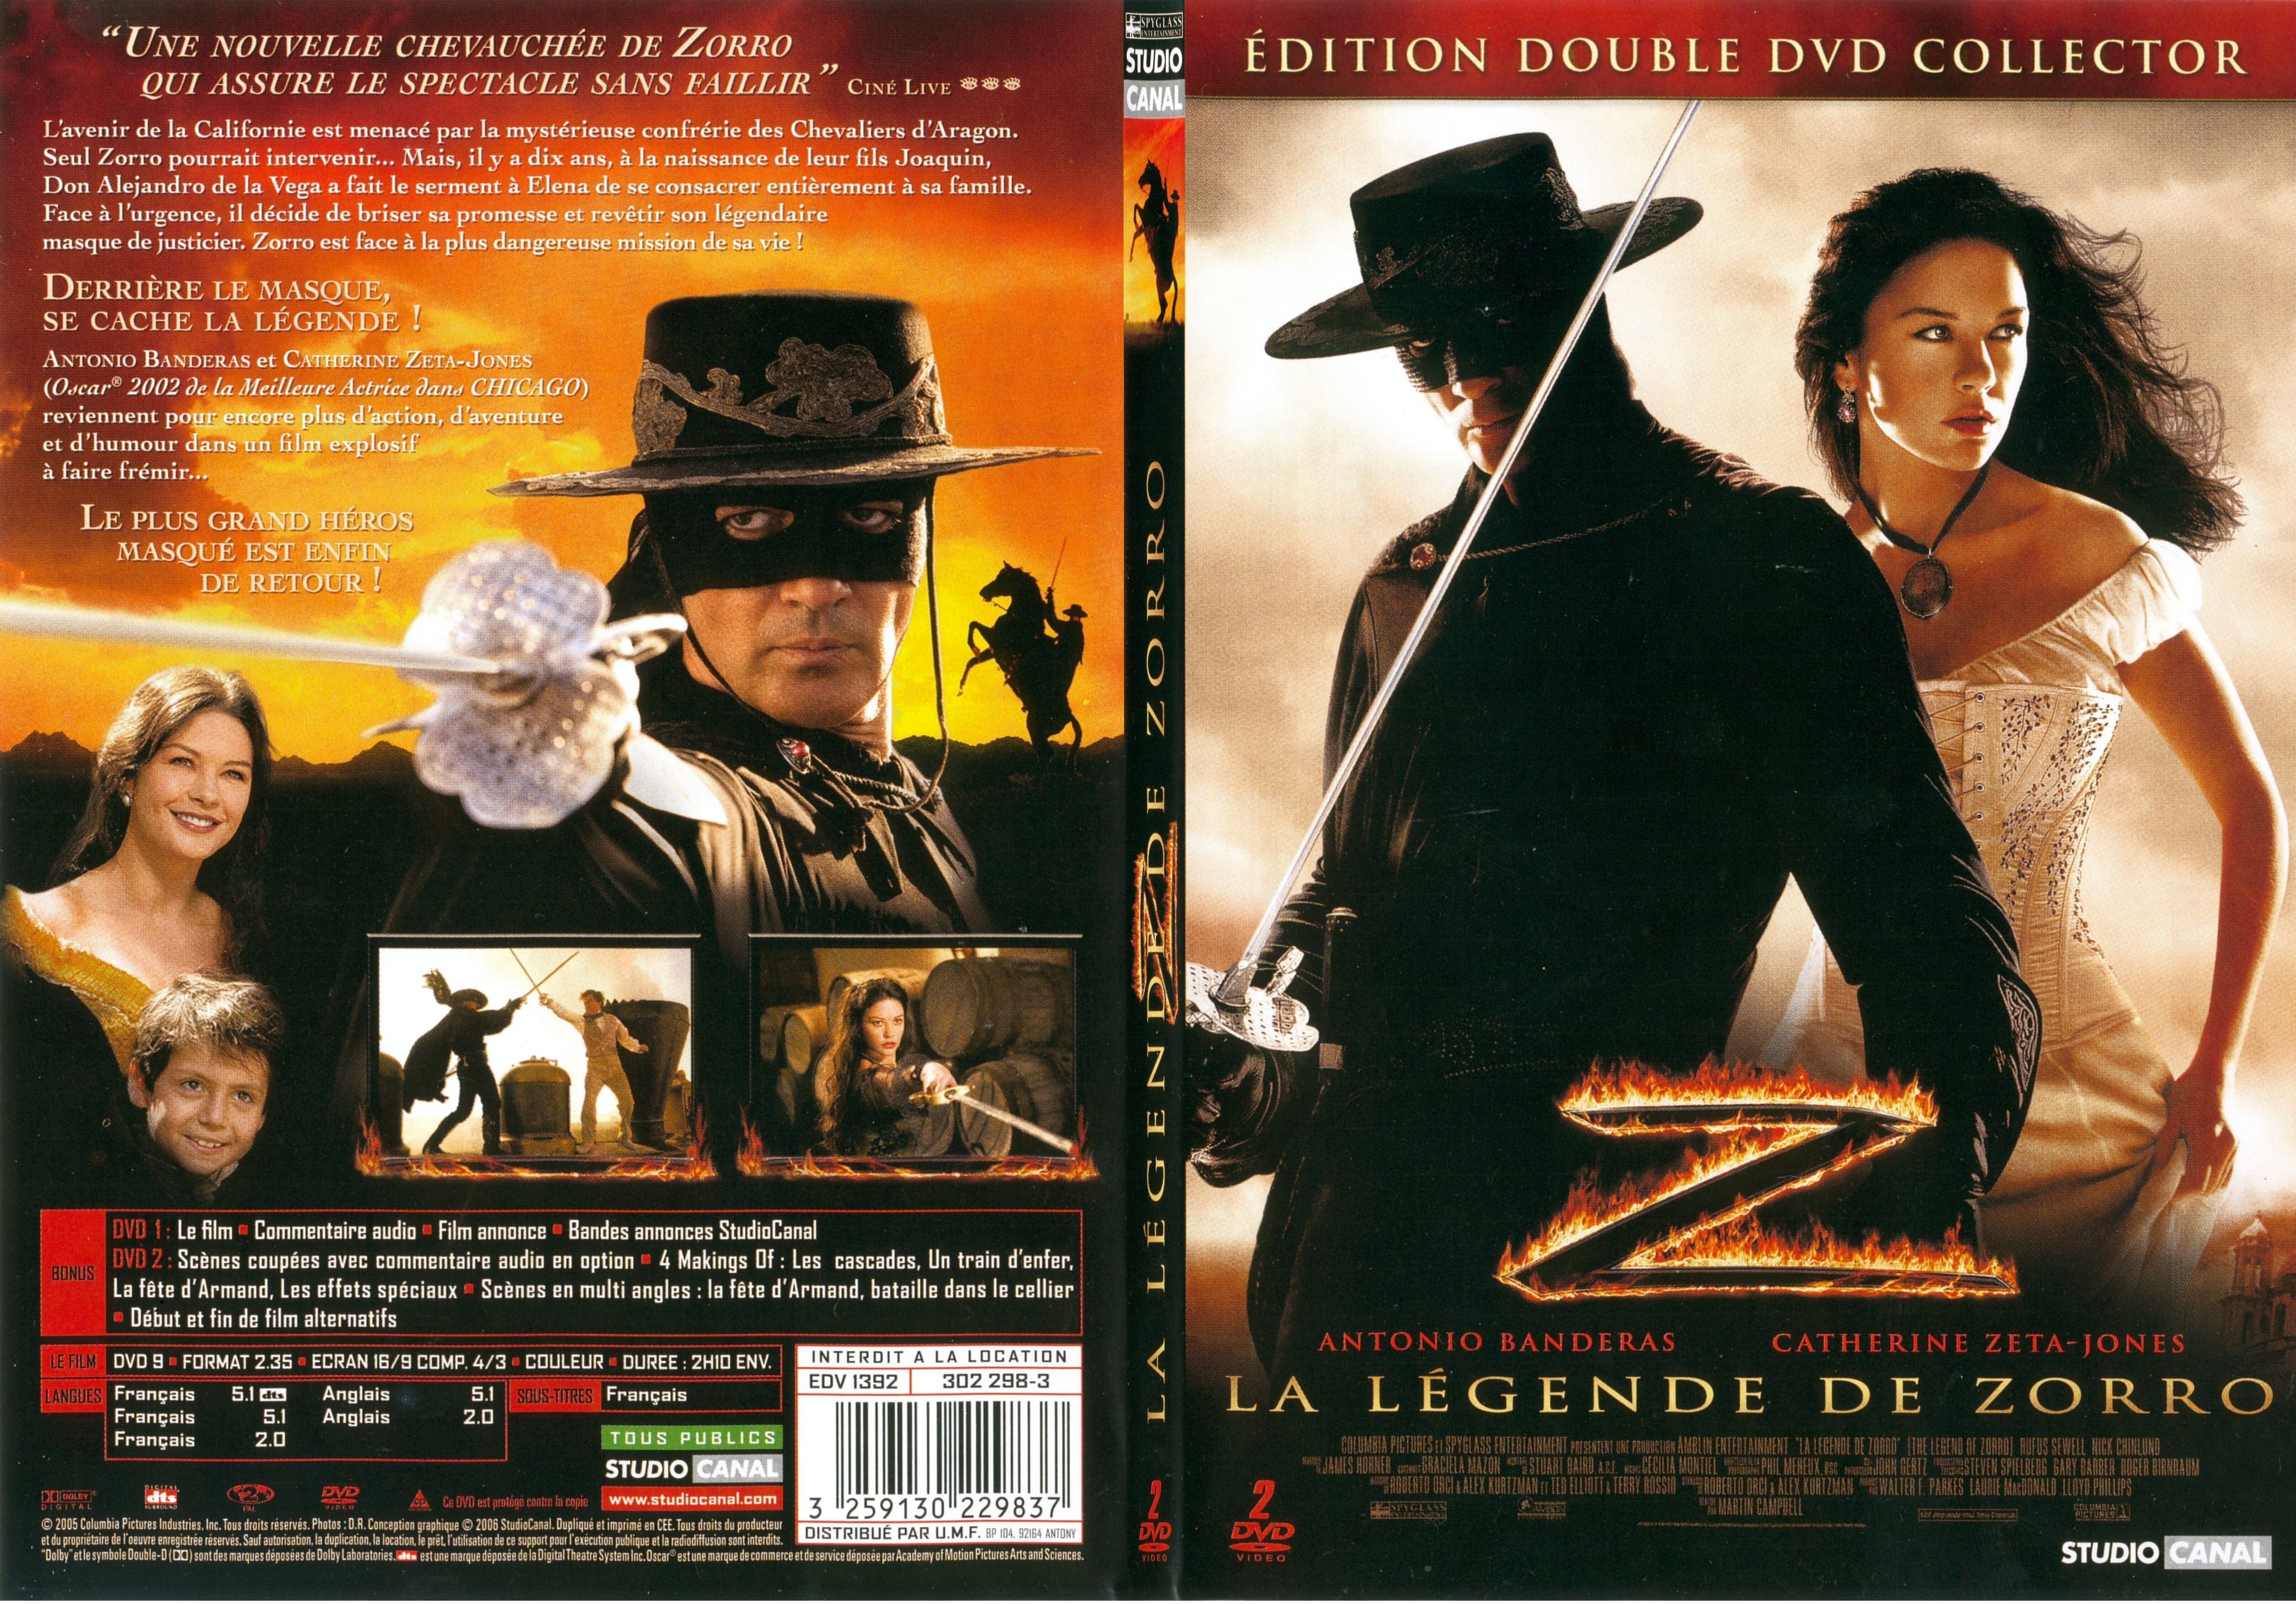 Jaquette DVD La lgende de Zorro - SLIM